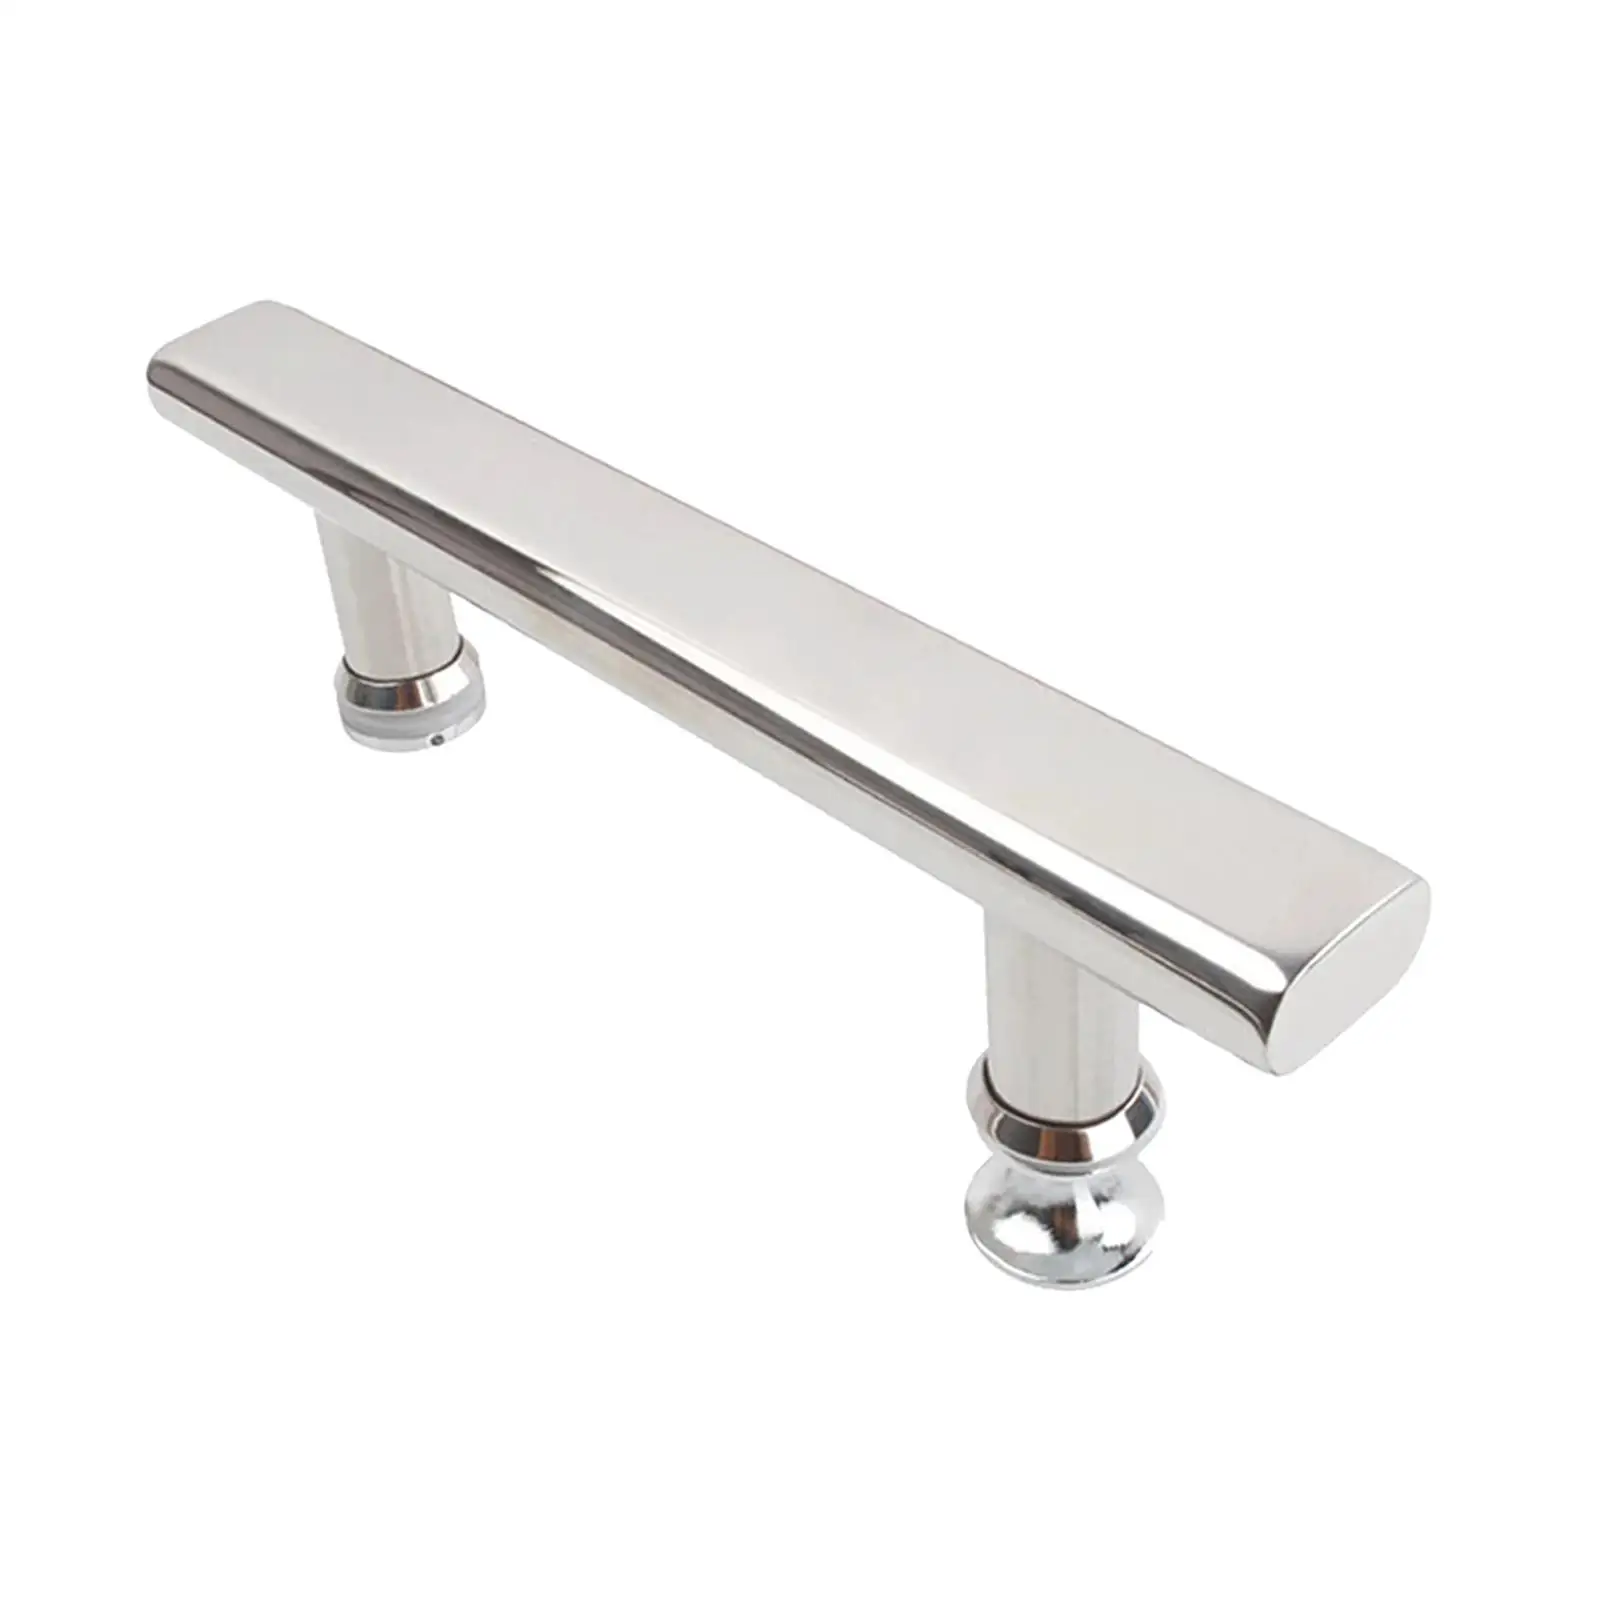 Stainless Steel Push Pull Door Handle Glass Door Bathroom Easy to Install Hardware Pull Handle for Bedroom Barn Door Kitchen